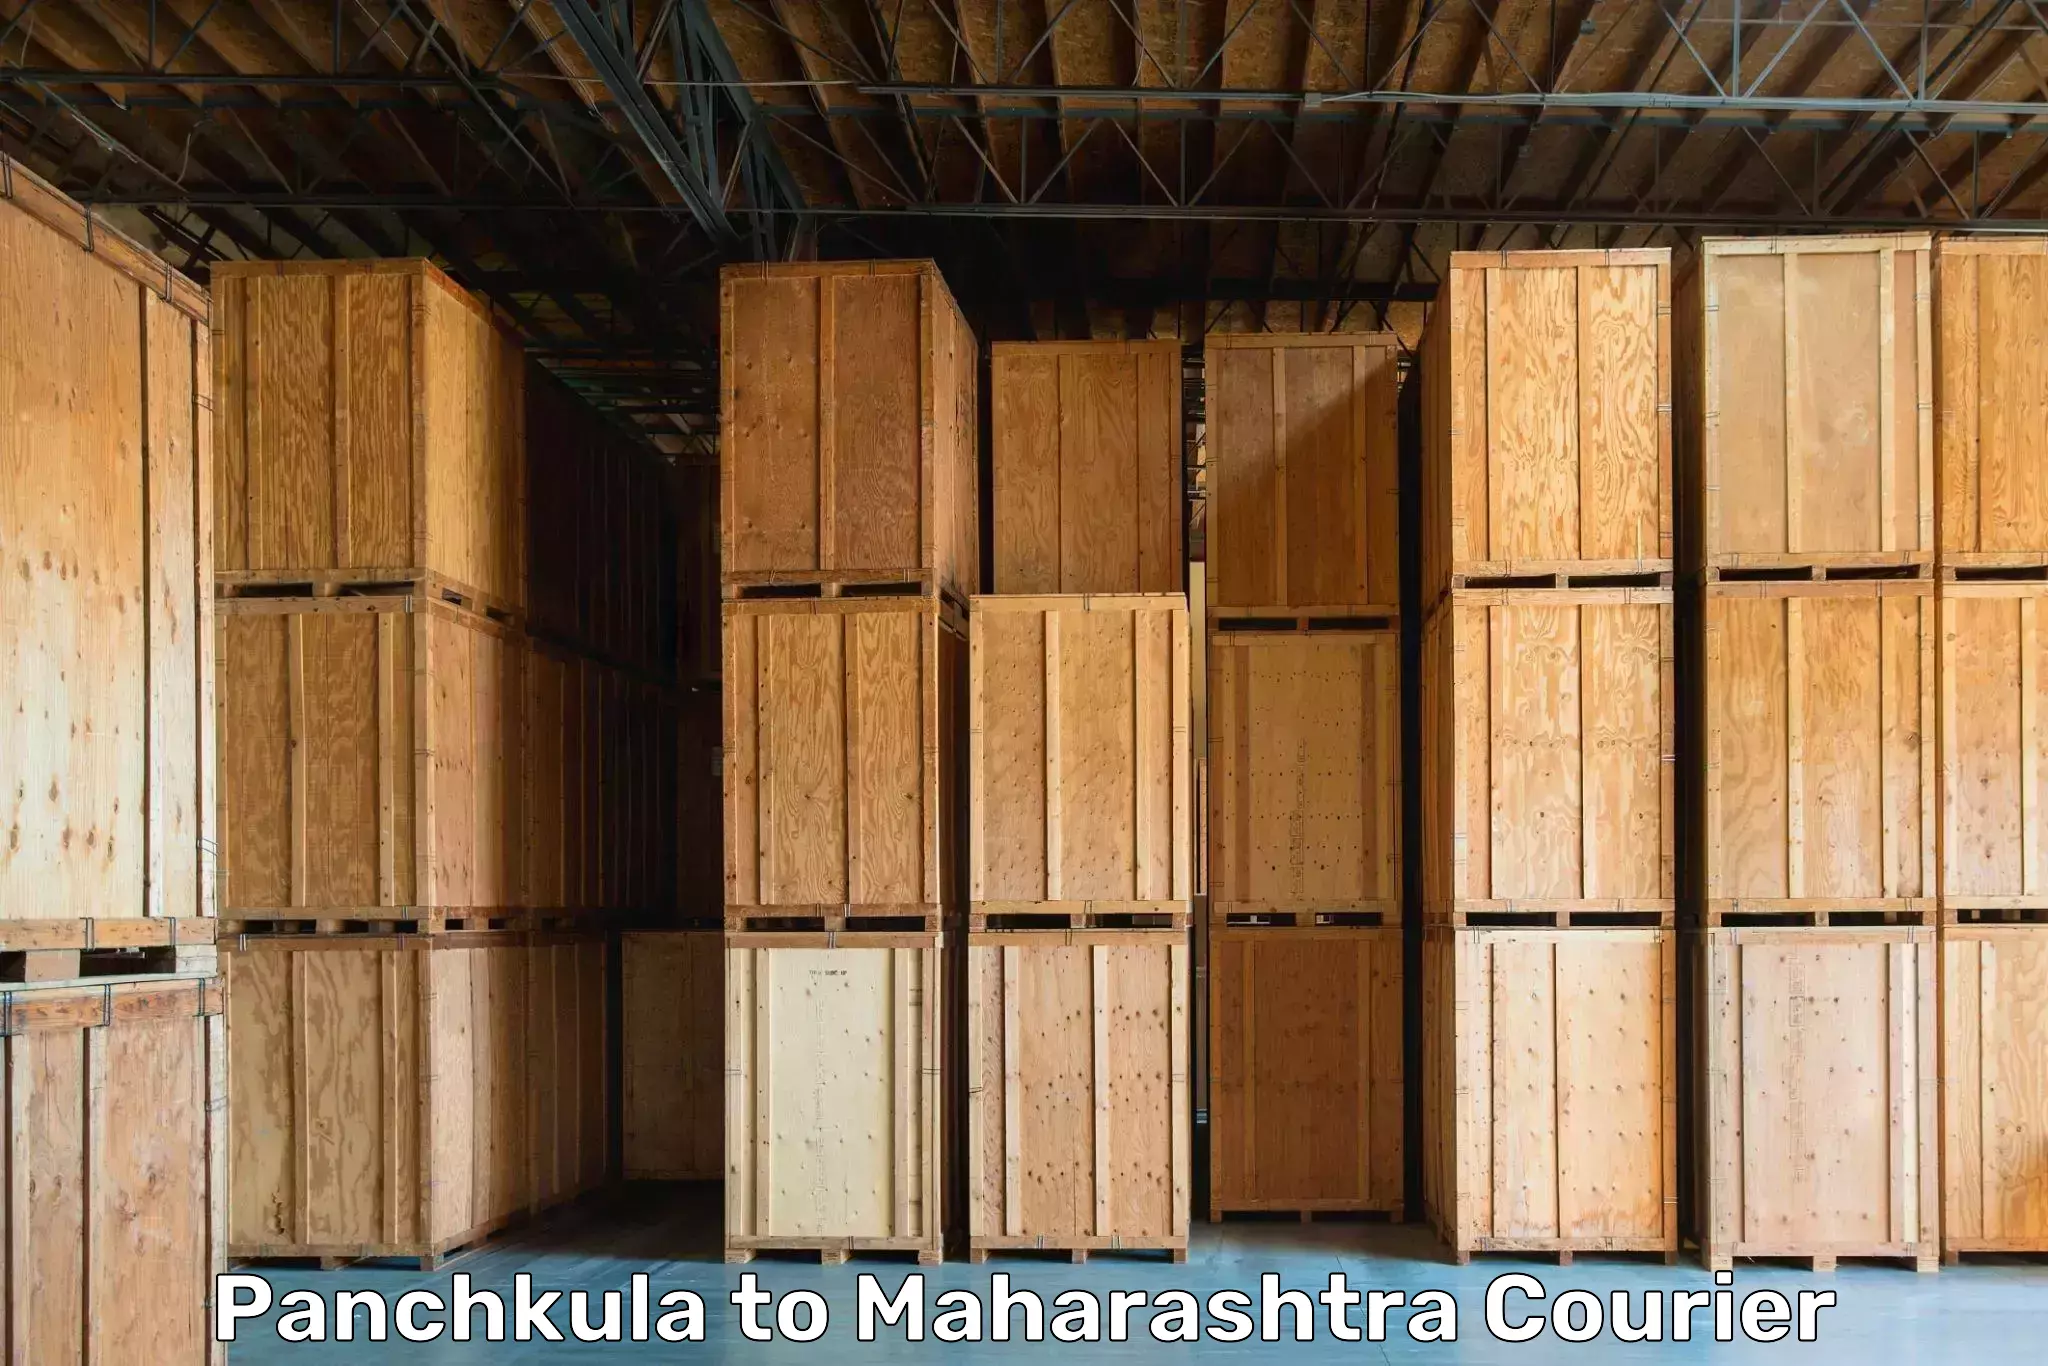 Moving and handling services Panchkula to Maharashtra